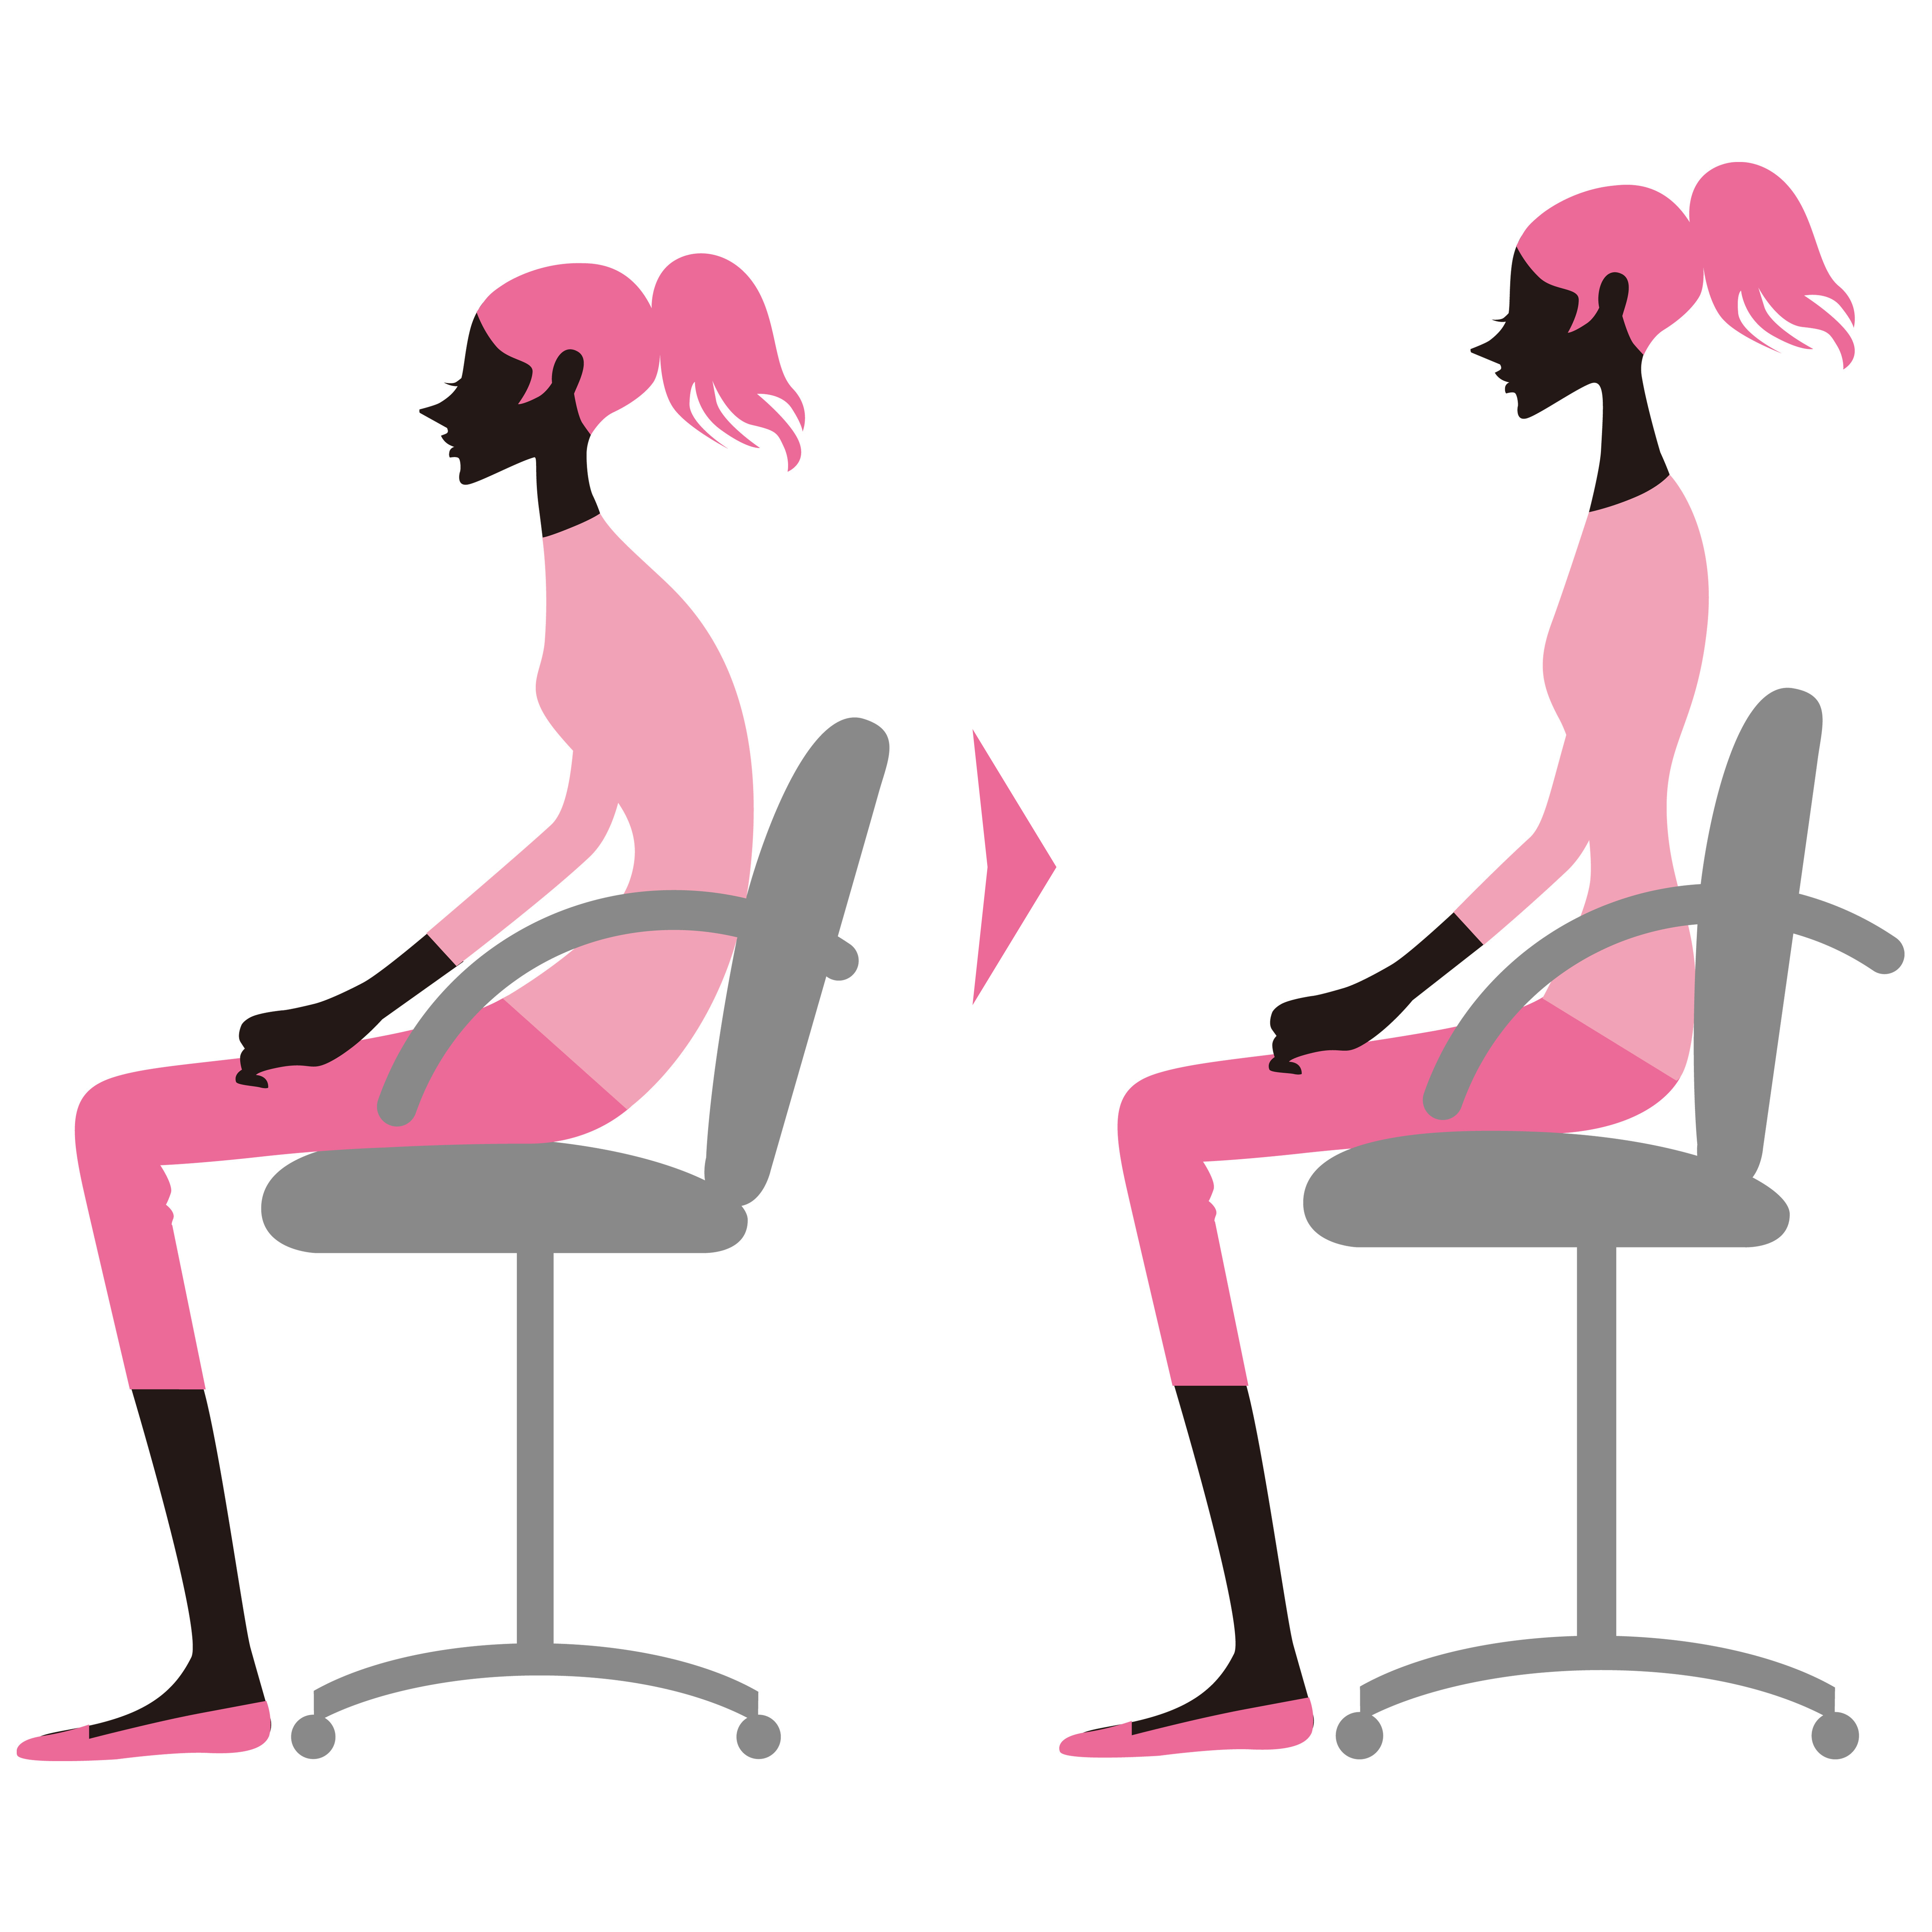 社内うつを防げ すべり座りを坐骨座りに変える デスクワーク姿勢研修 開始 一般社団法人 日本姿勢予防医学協会のプレスリリース